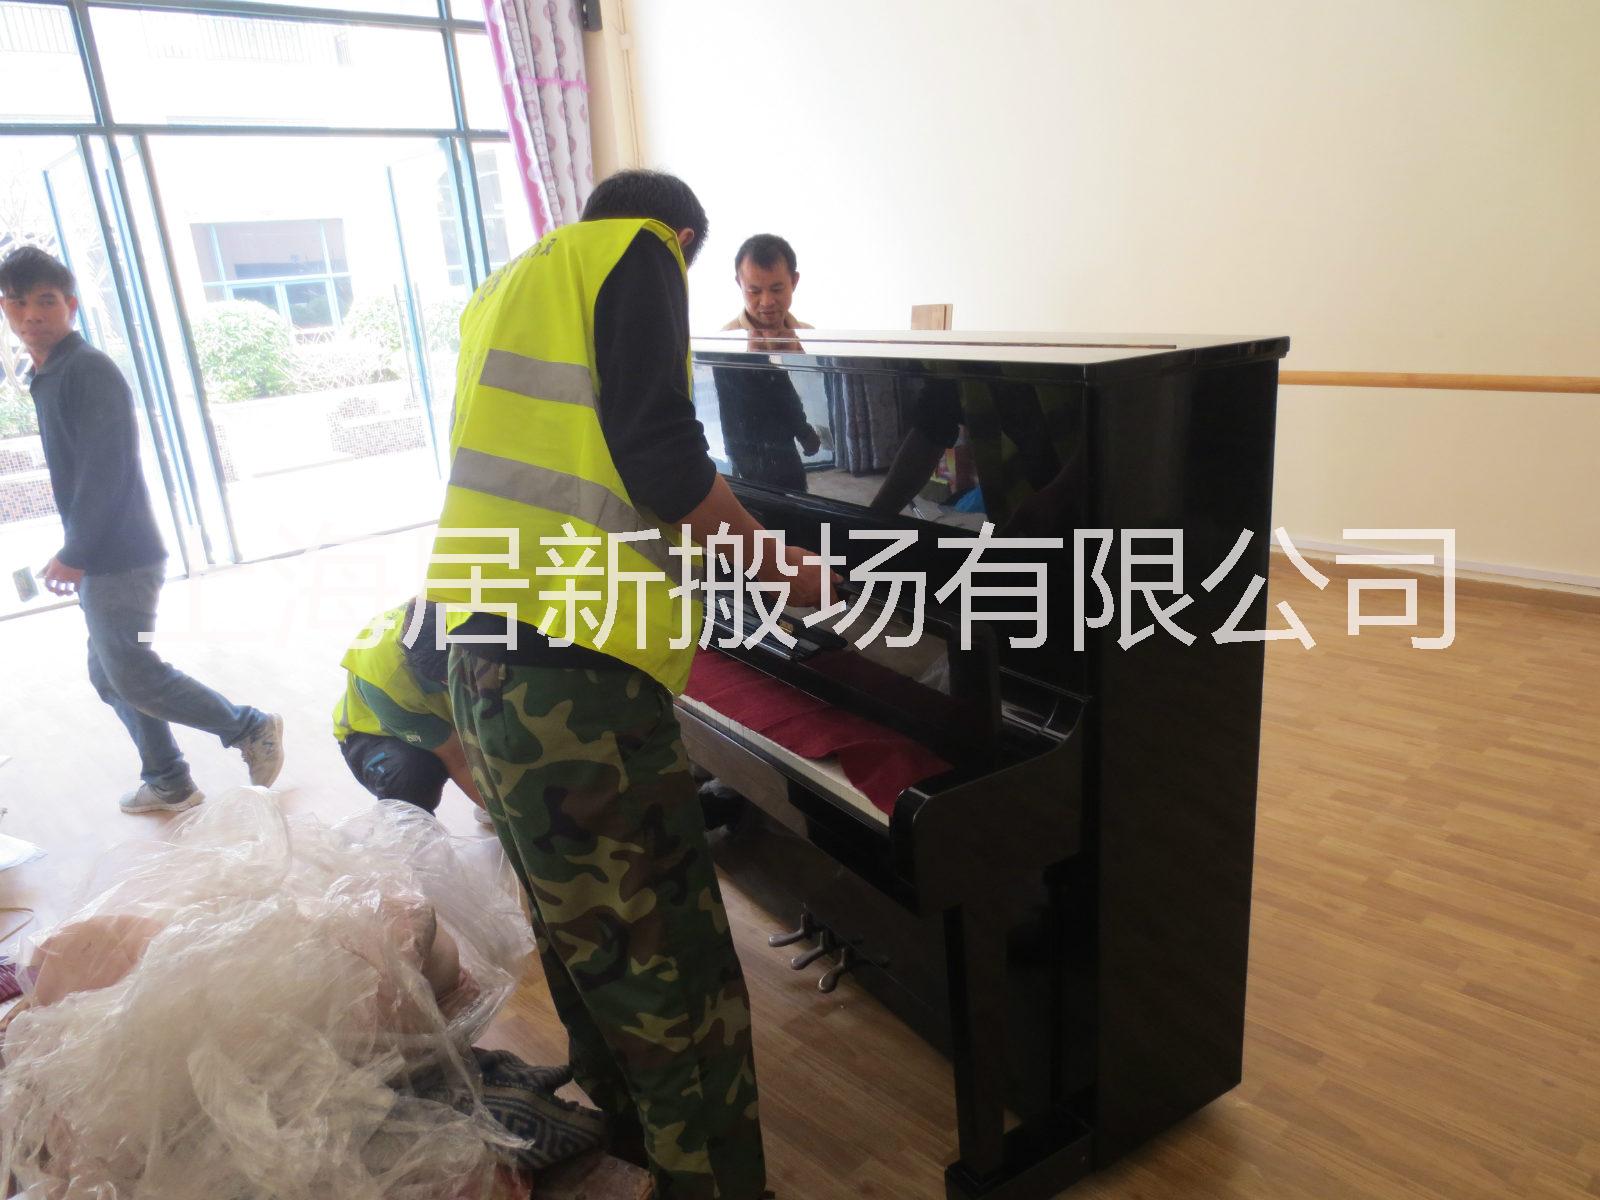 上海钢琴搬运价格/钢琴搬运多少钱